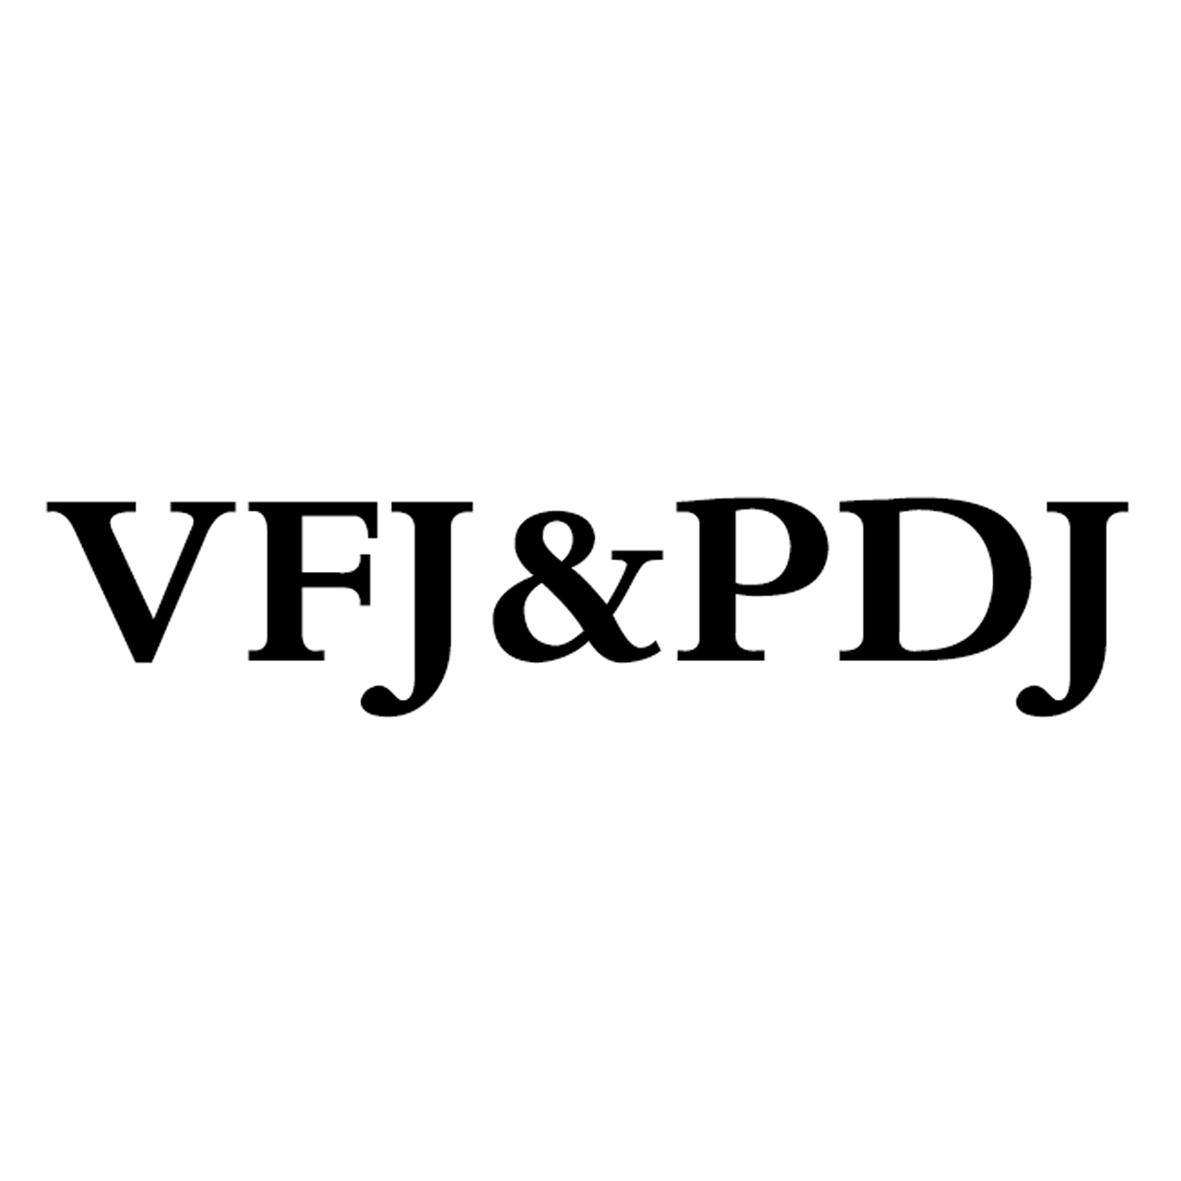 VFJ&PDJ